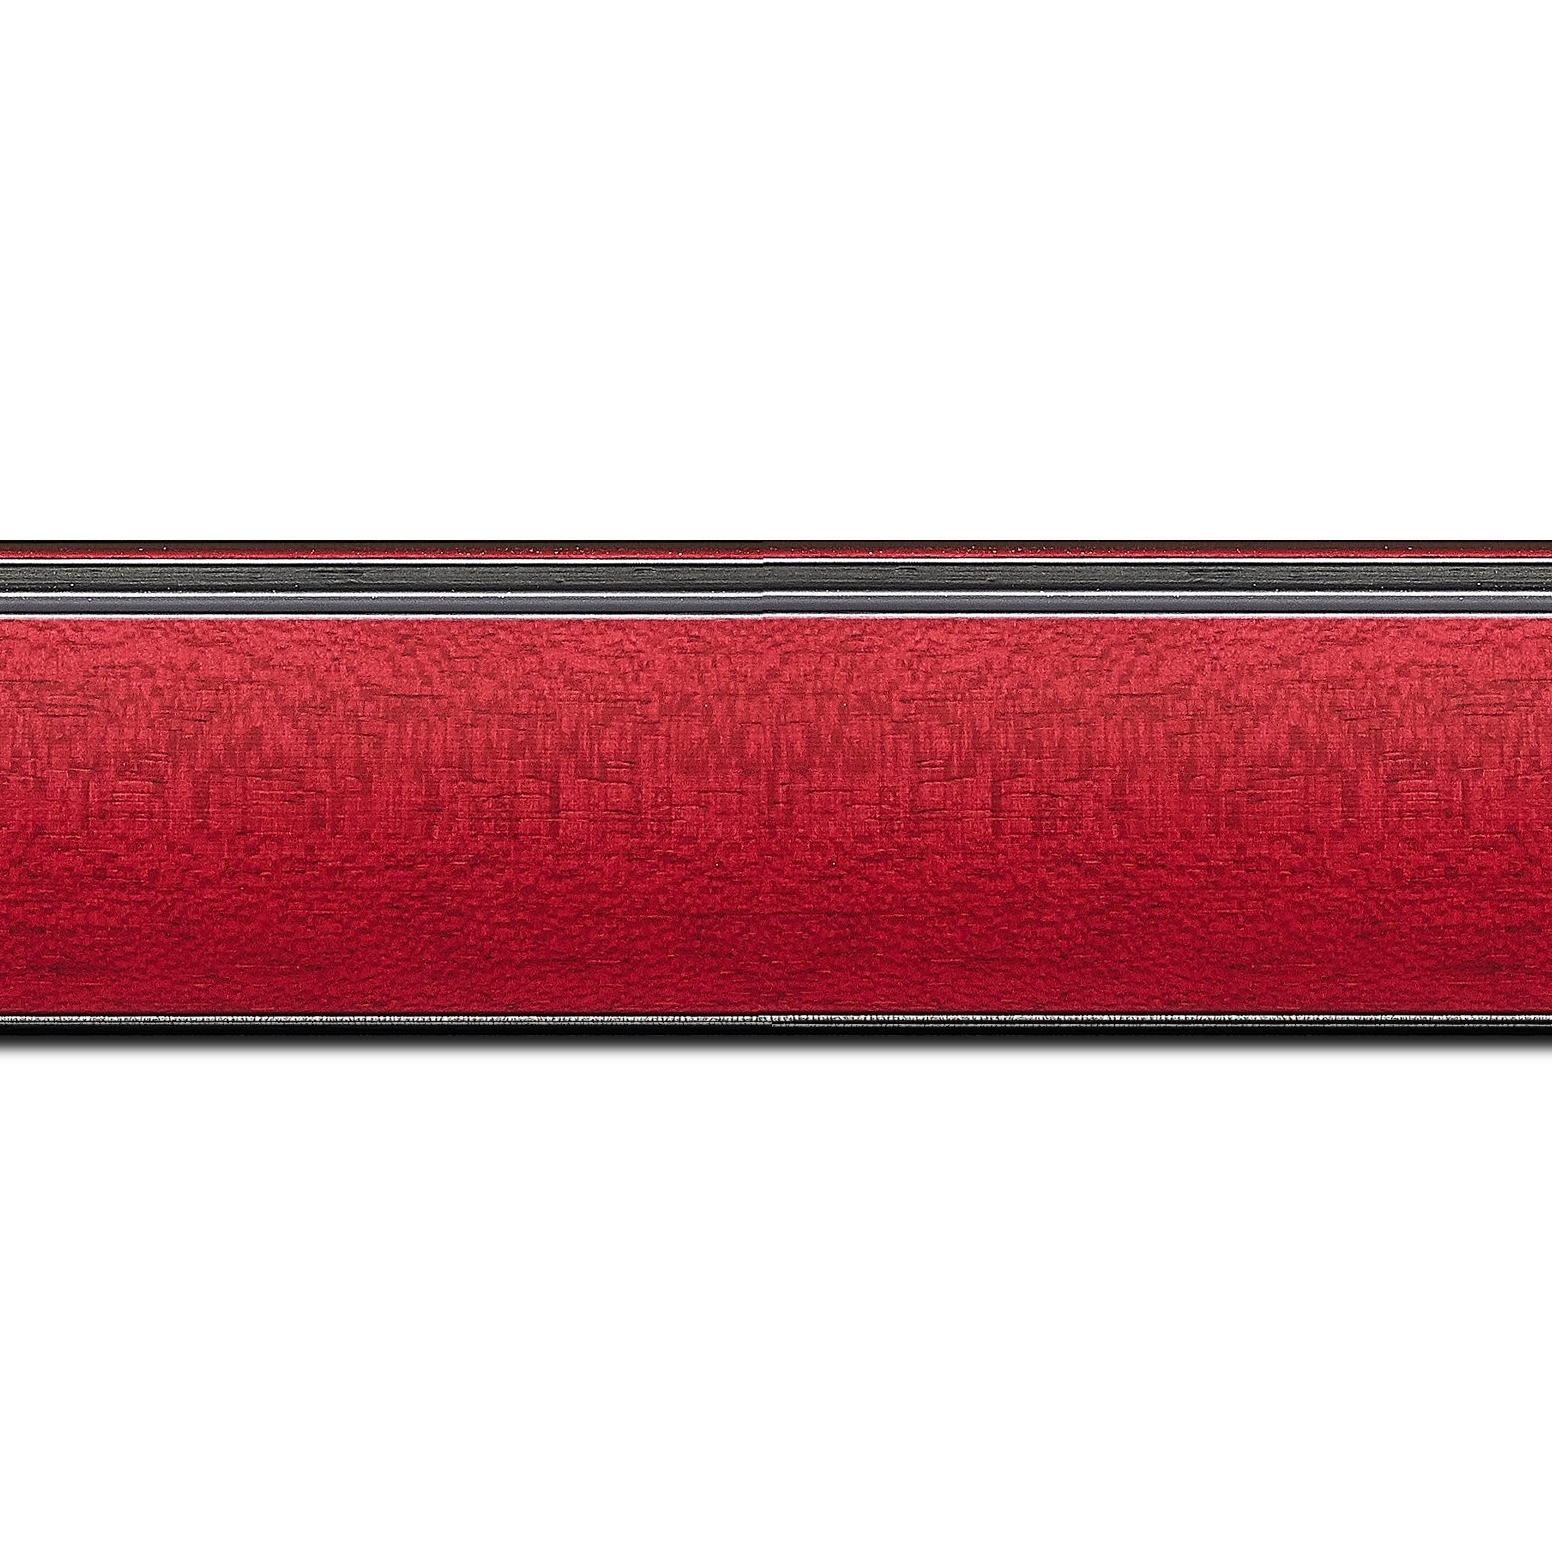 Baguette longueur 1.40m bois profil en pente méplat largeur 4.8cm couleur rouge cerise satiné surligné par une gorge extérieure noire : originalité et élégance assurée